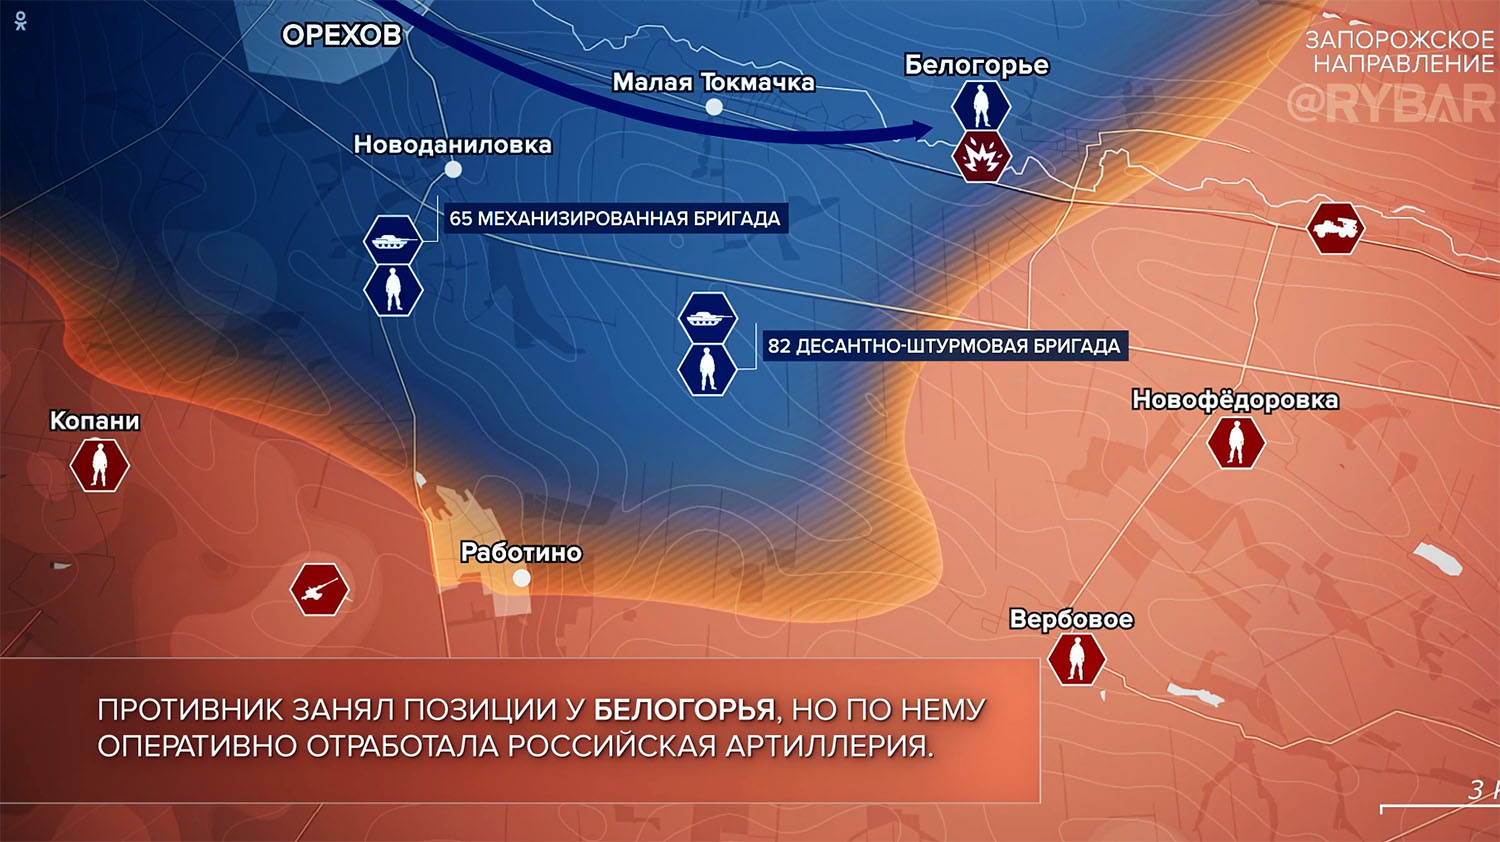 Карта боевых действий на Украине, Запорожское направление, на 02.10.23г. Карта СВО от «Рыбарь».